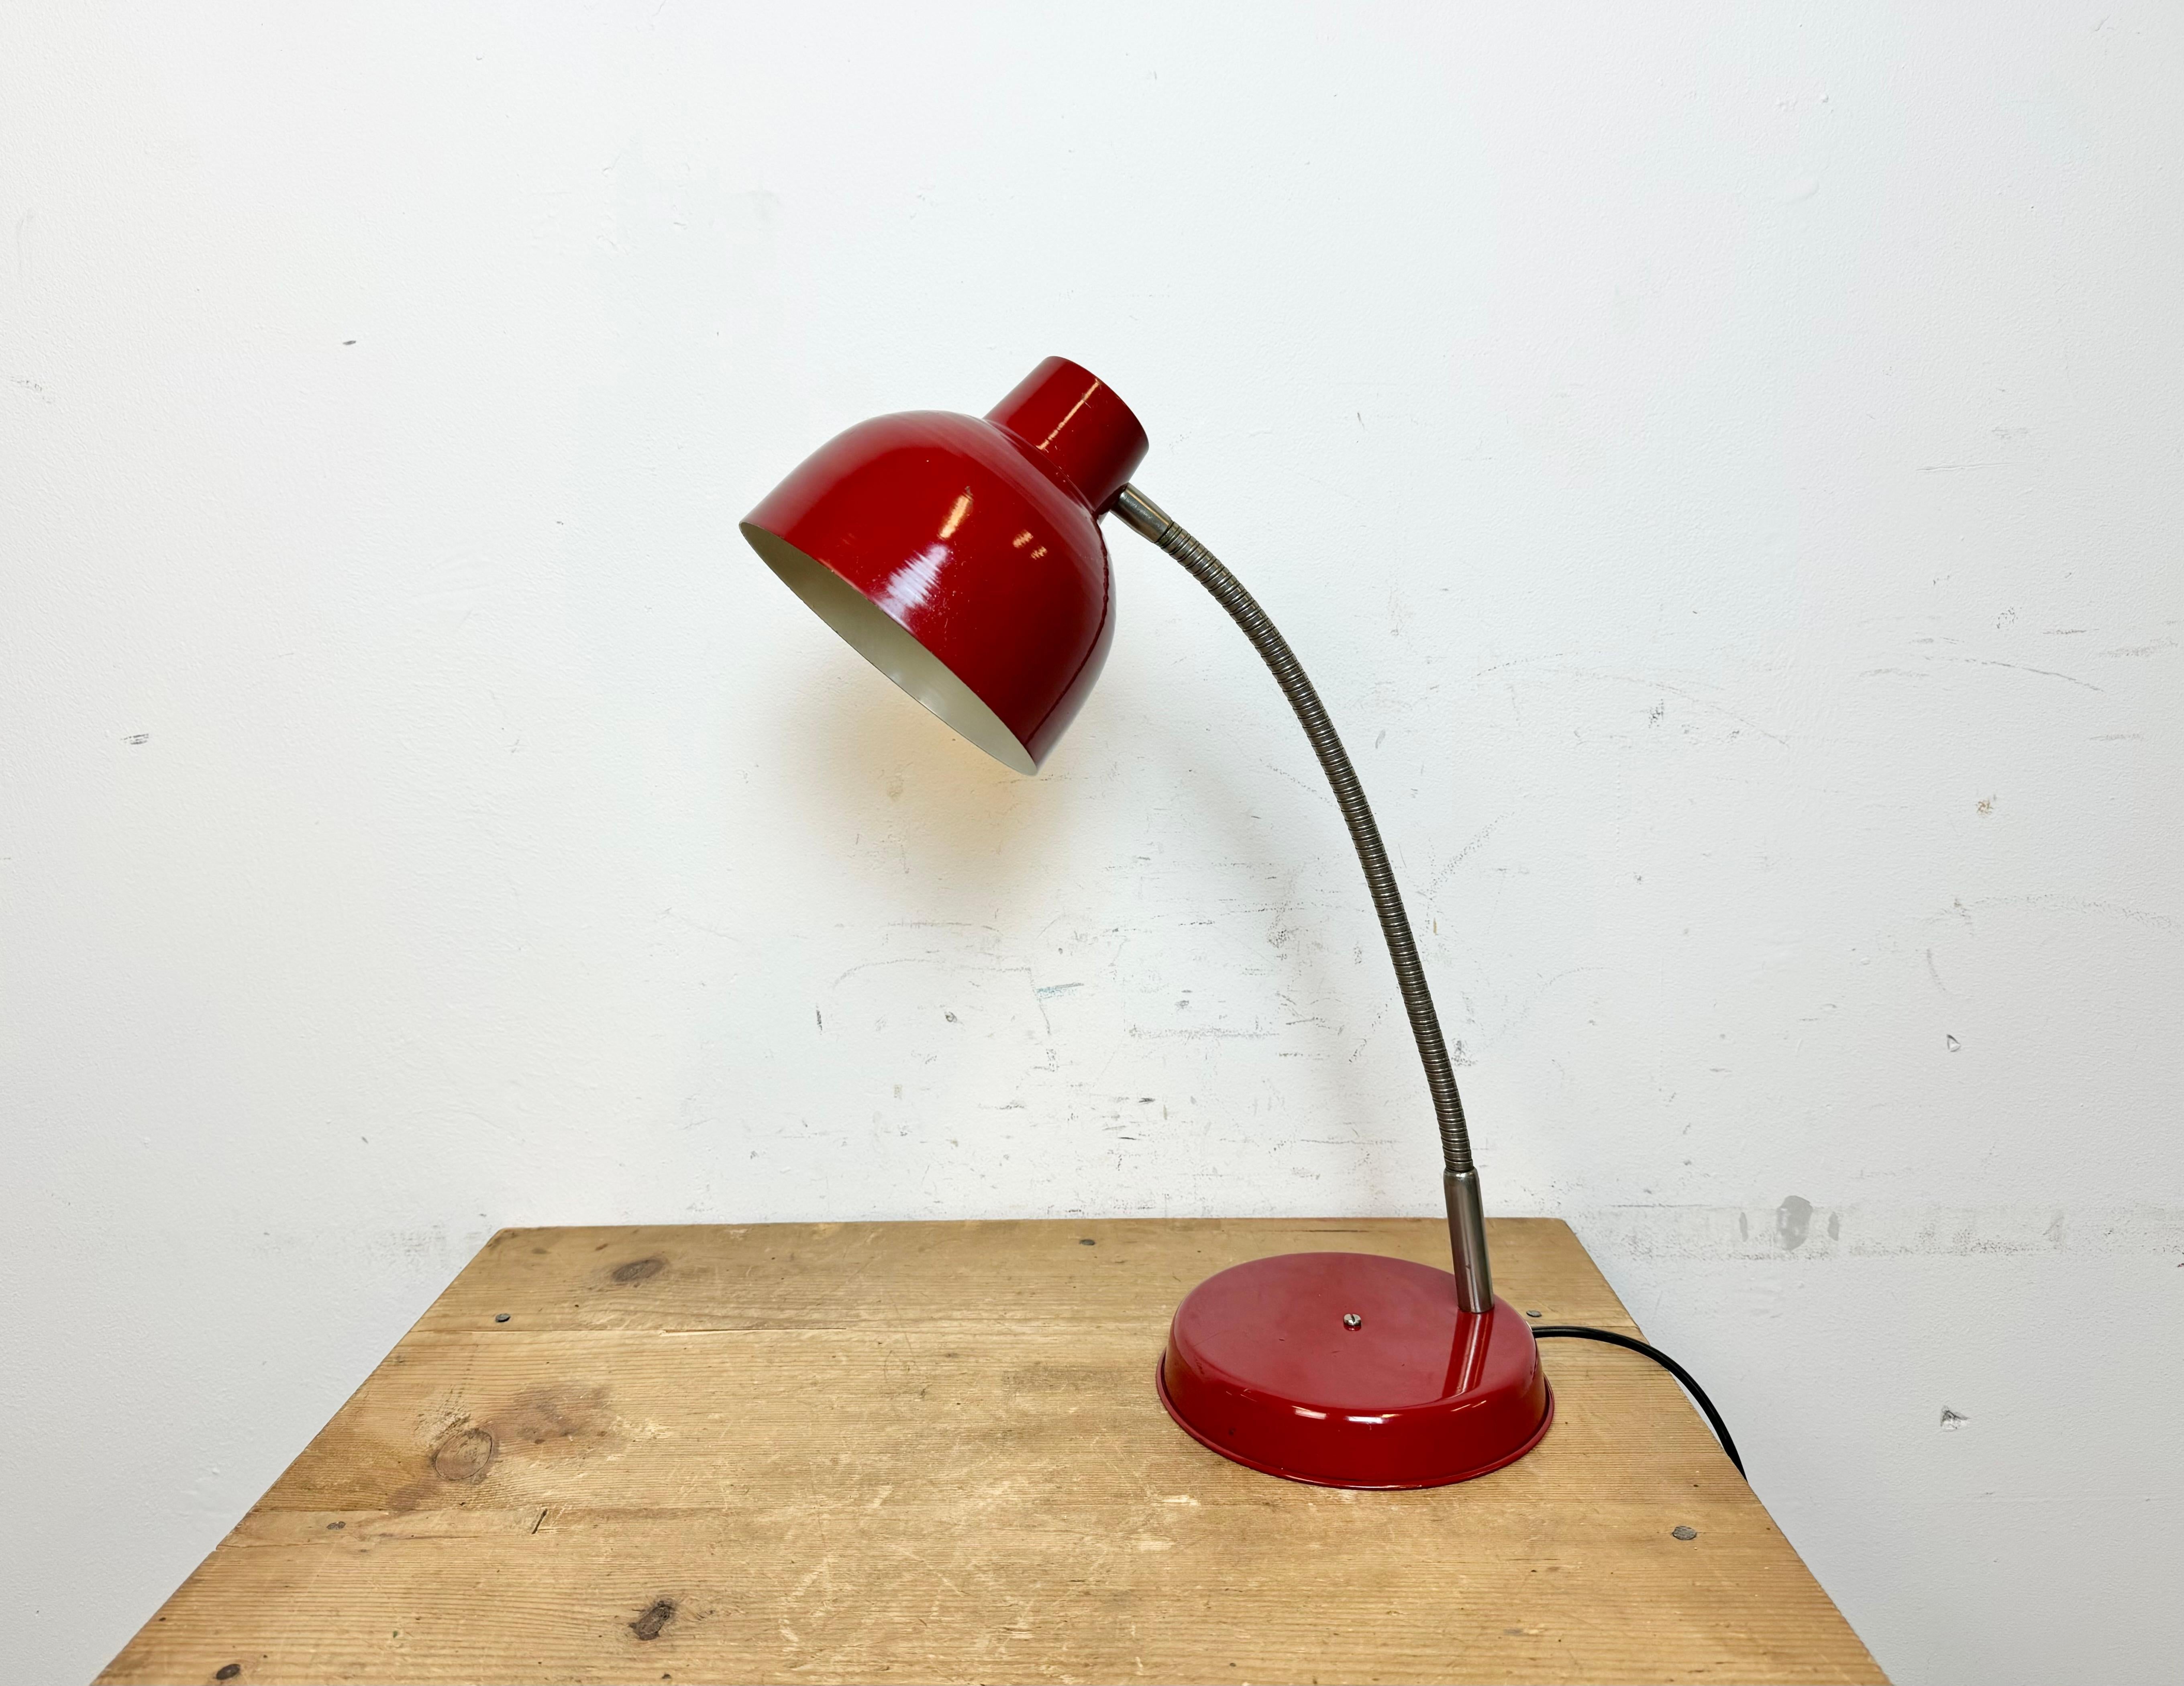 Industrielle Werkstatt-Tischlampe, hergestellt von SRSE in Polen in den 1960er Jahren, mit rotem Metallsockel und -schirm und einem  verchromter Schwanenhals. Die Originalfassung erfordert E27/E26-Glühbirnen.
Der Durchmesser des Schirms beträgt 15